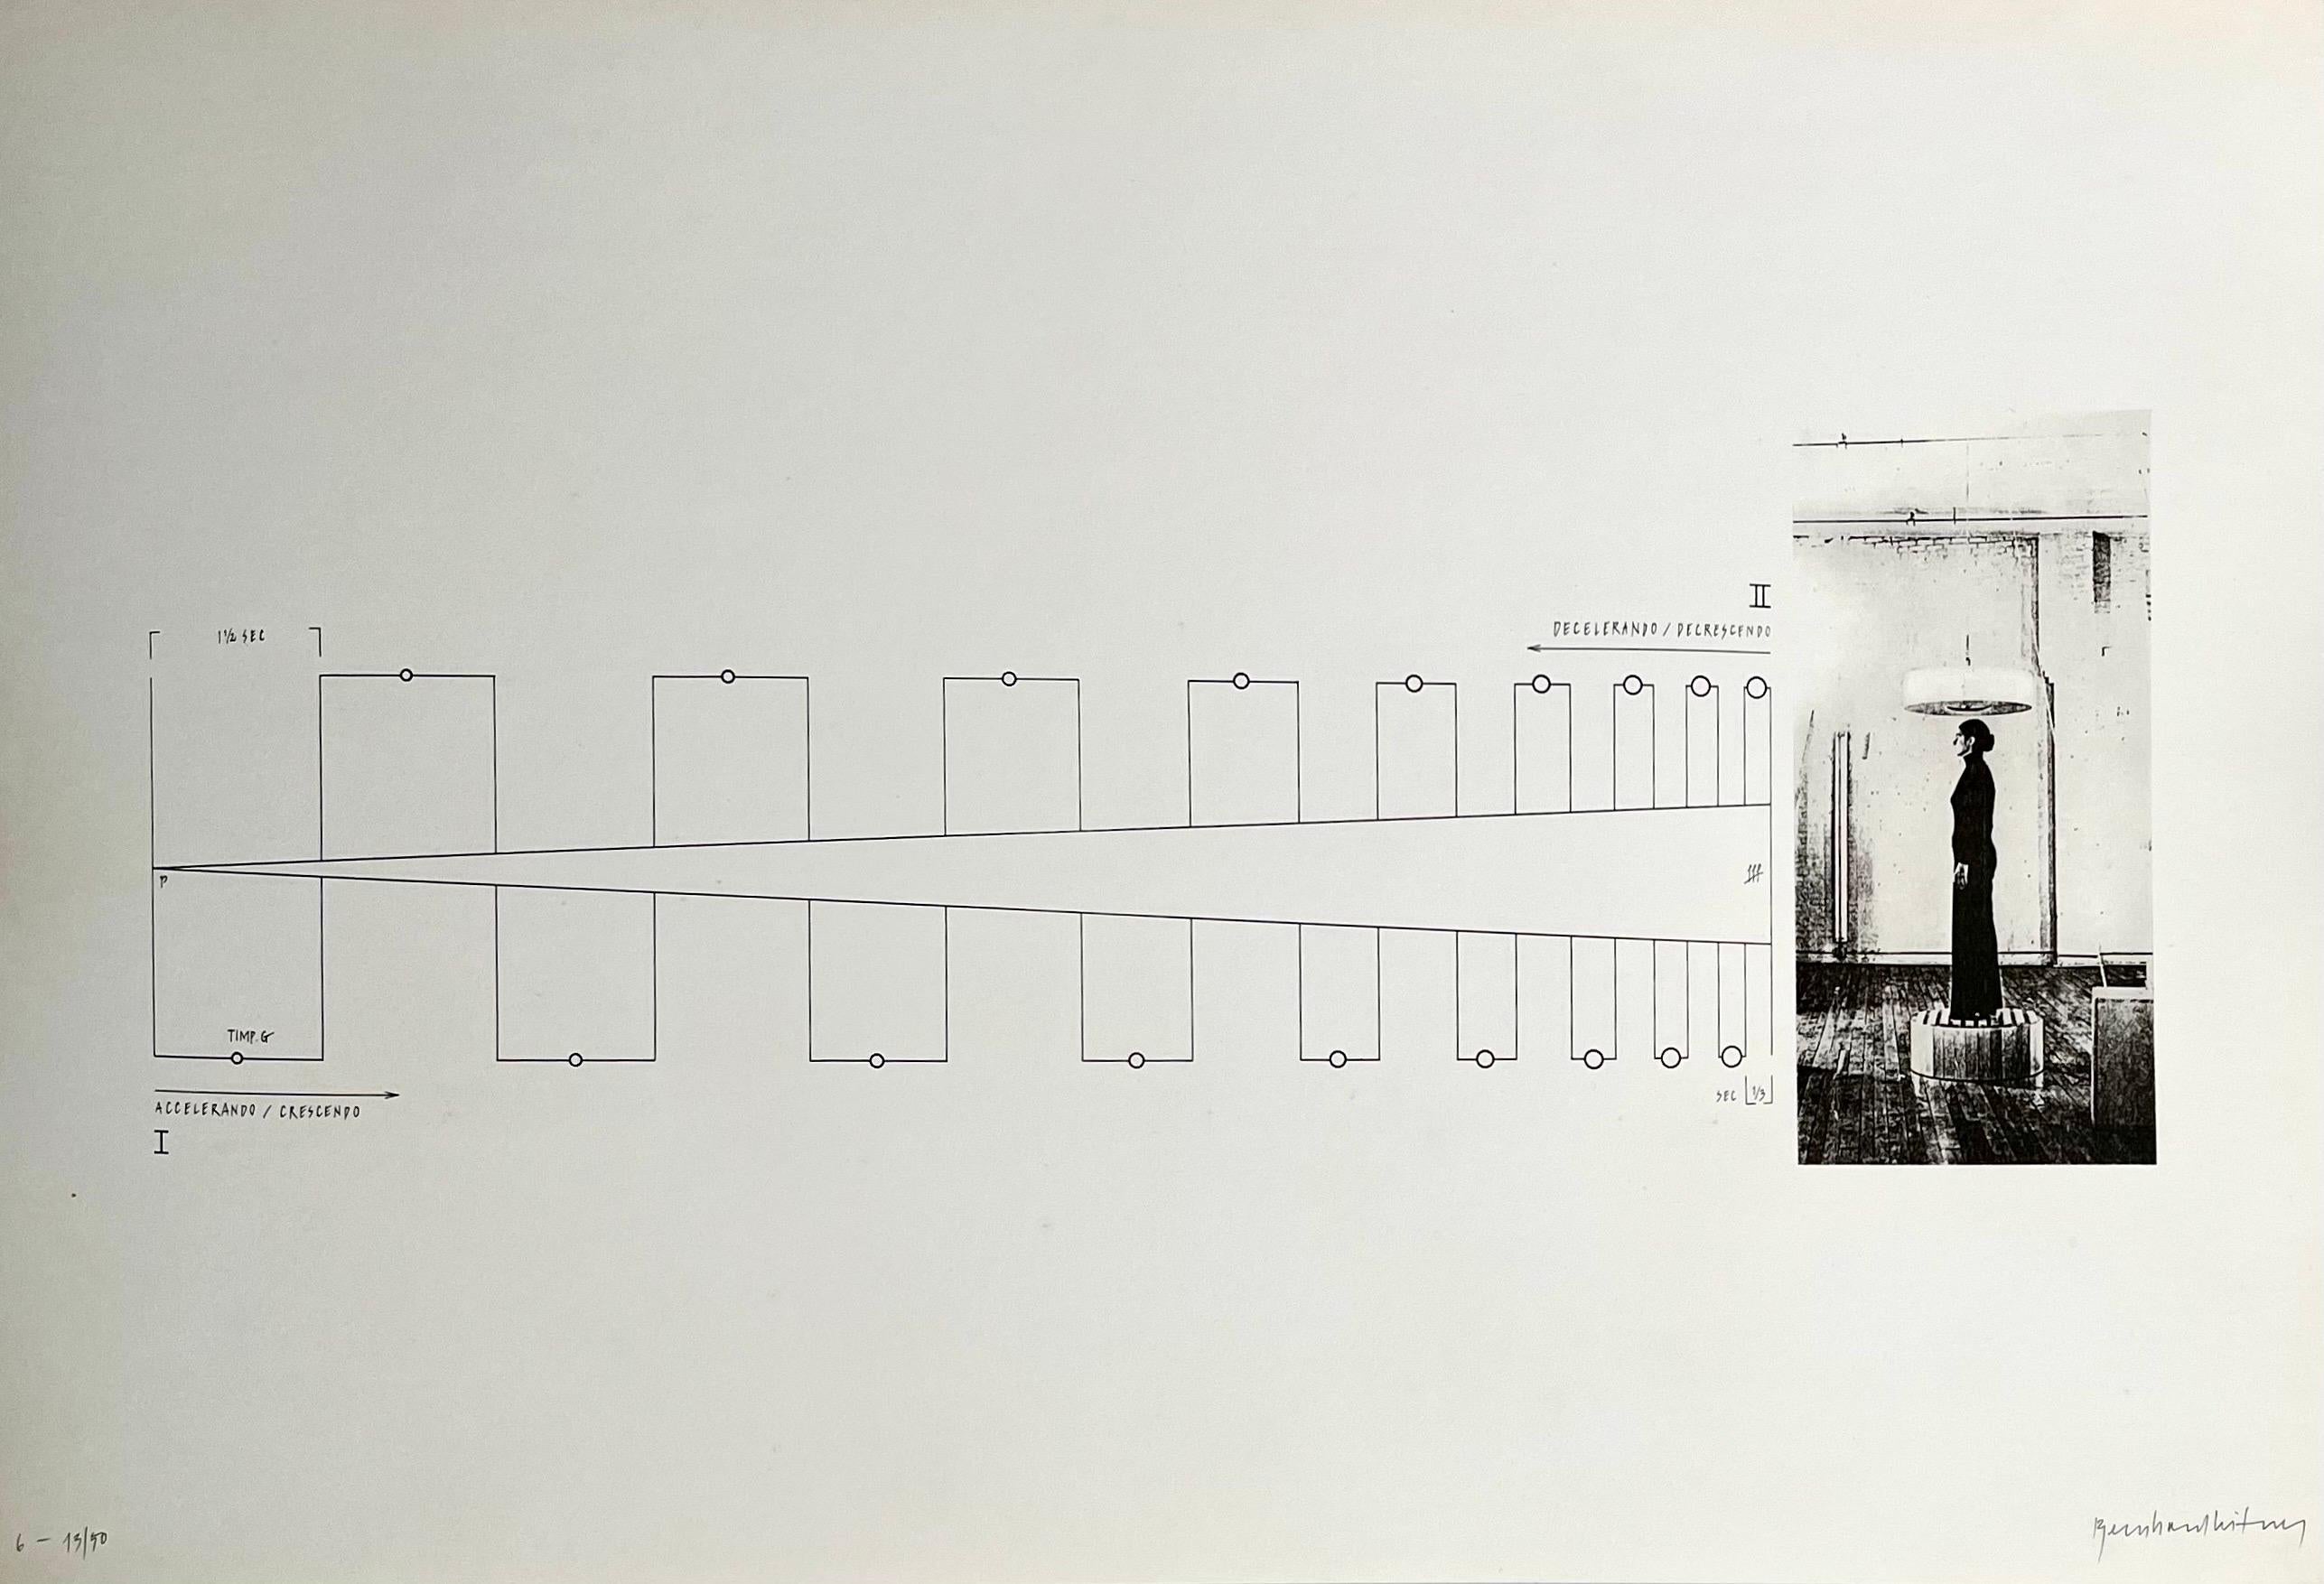 Bernhard Leitner, (Österreicher, 1938) 
Aus einer Mappe "Klang : Raum"  "Ton : Raum"
Selbstverlag des Künstlers, 1975/1976, 
Limitierte Auflage von 50 Stück
Vom Künstler mit Bleistift signiert.

Nach Angaben seiner Galerie handelt es sich um ein